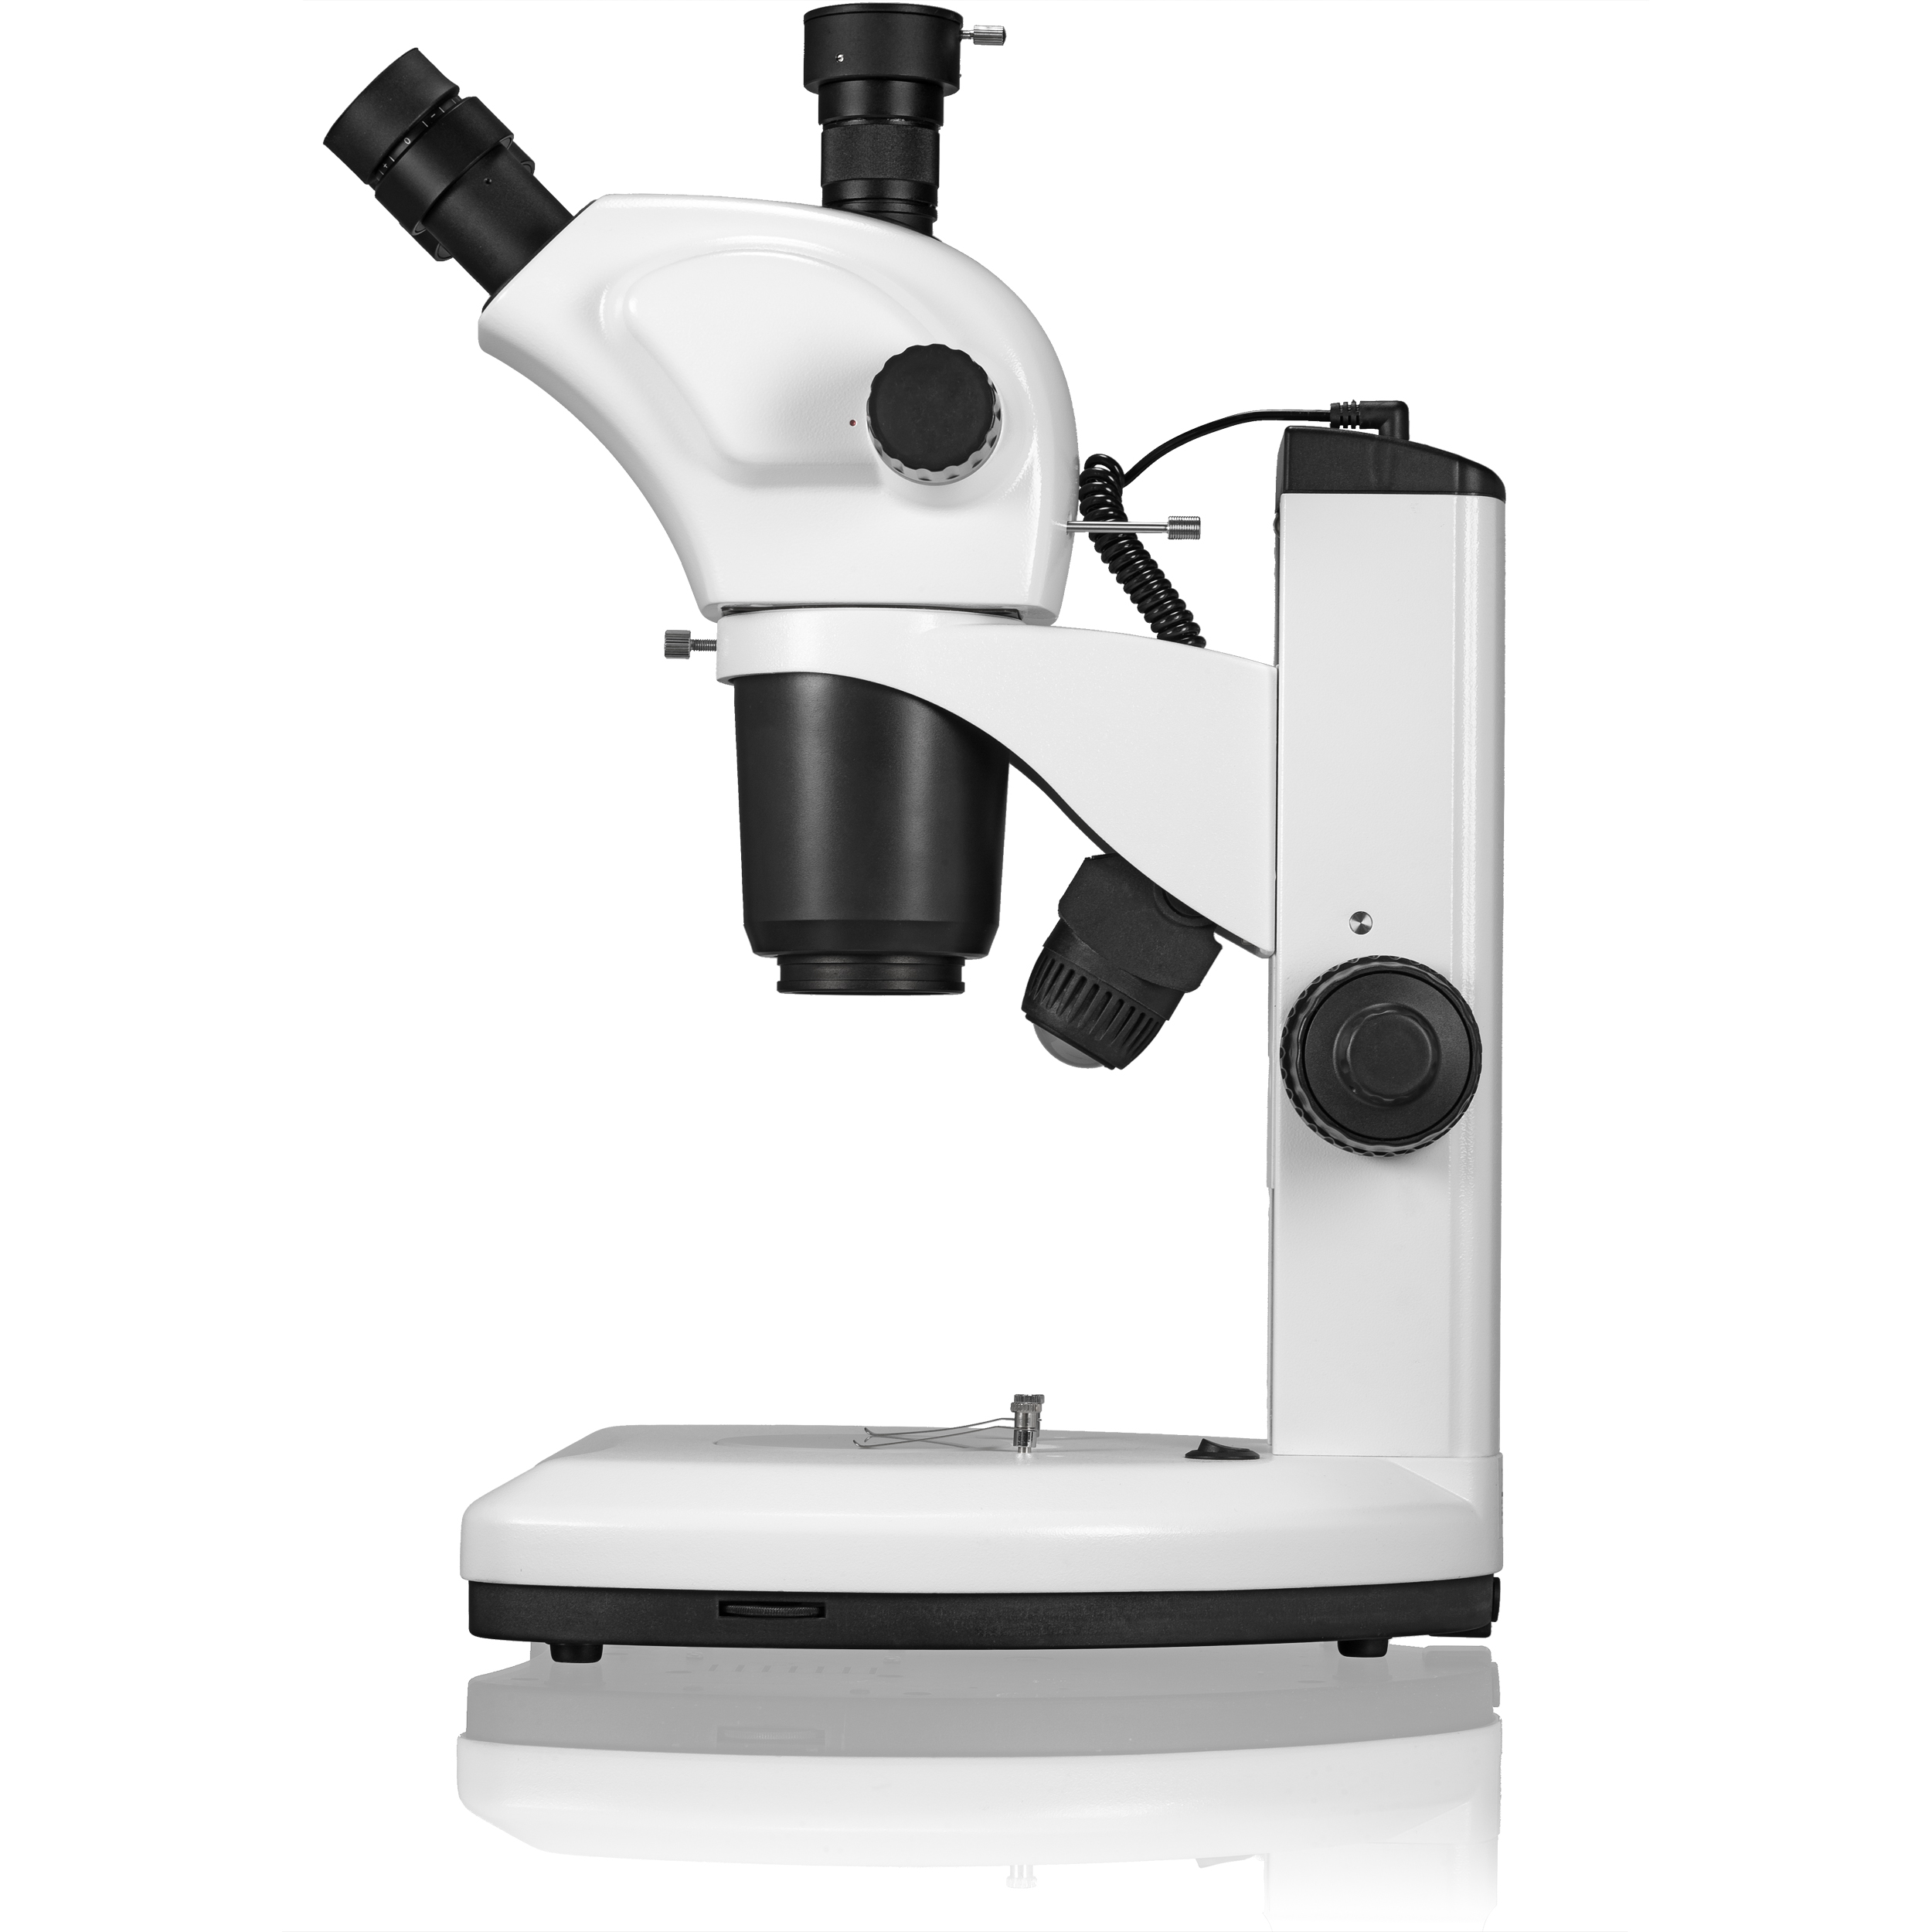 BRESSER Science ETD-301 7-63x Trino Zoom Stereo-Microscope